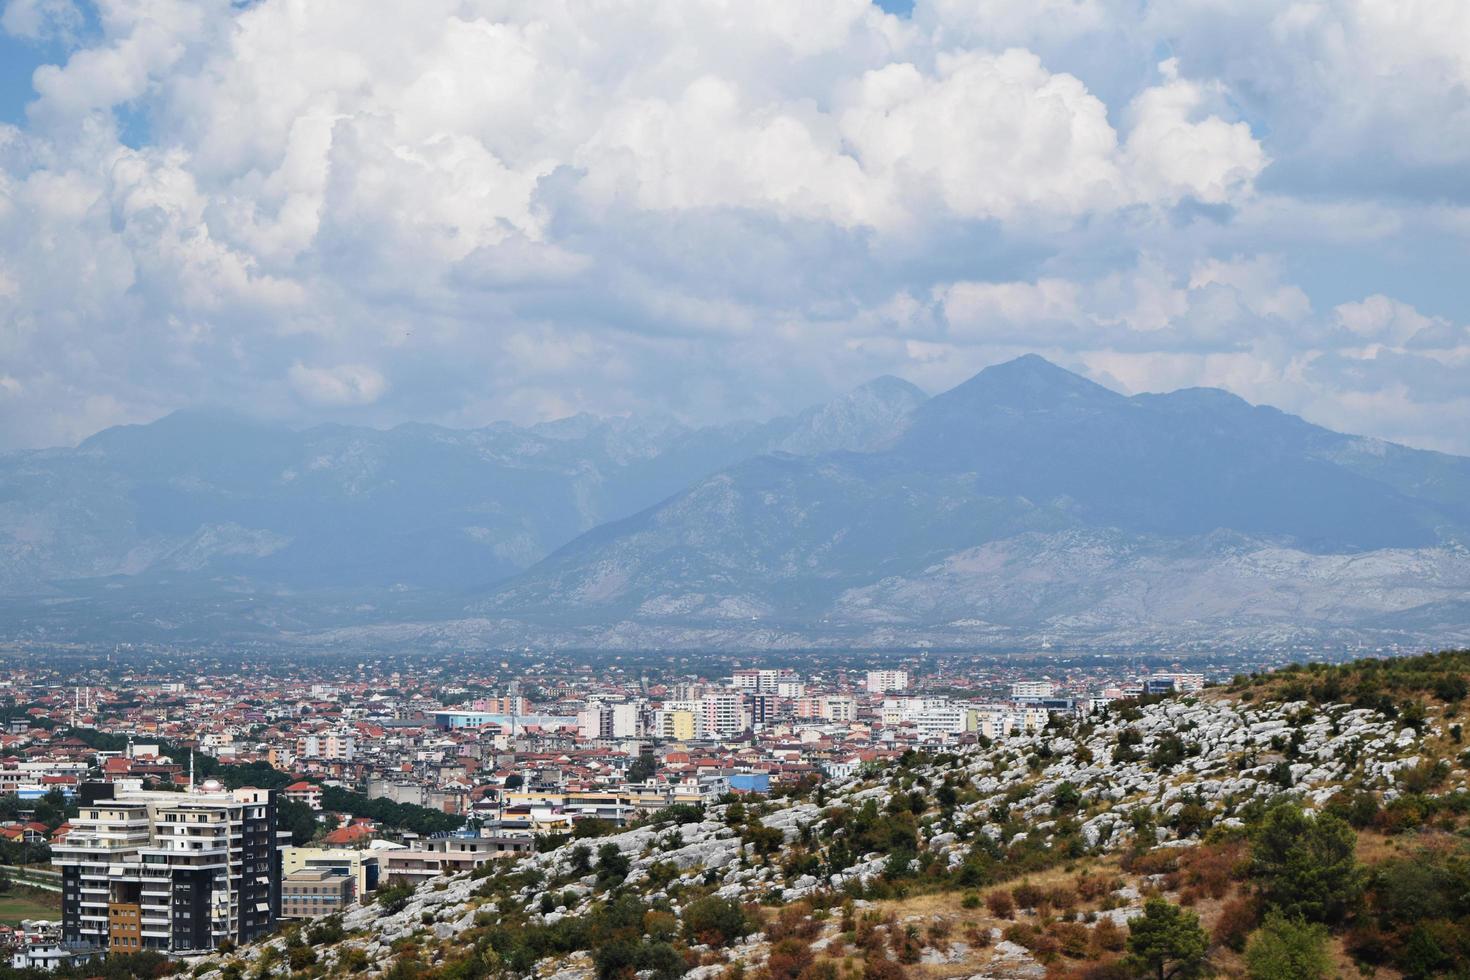 vista de los alrededores de la ciudad de shkoder en albania desde una altura foto